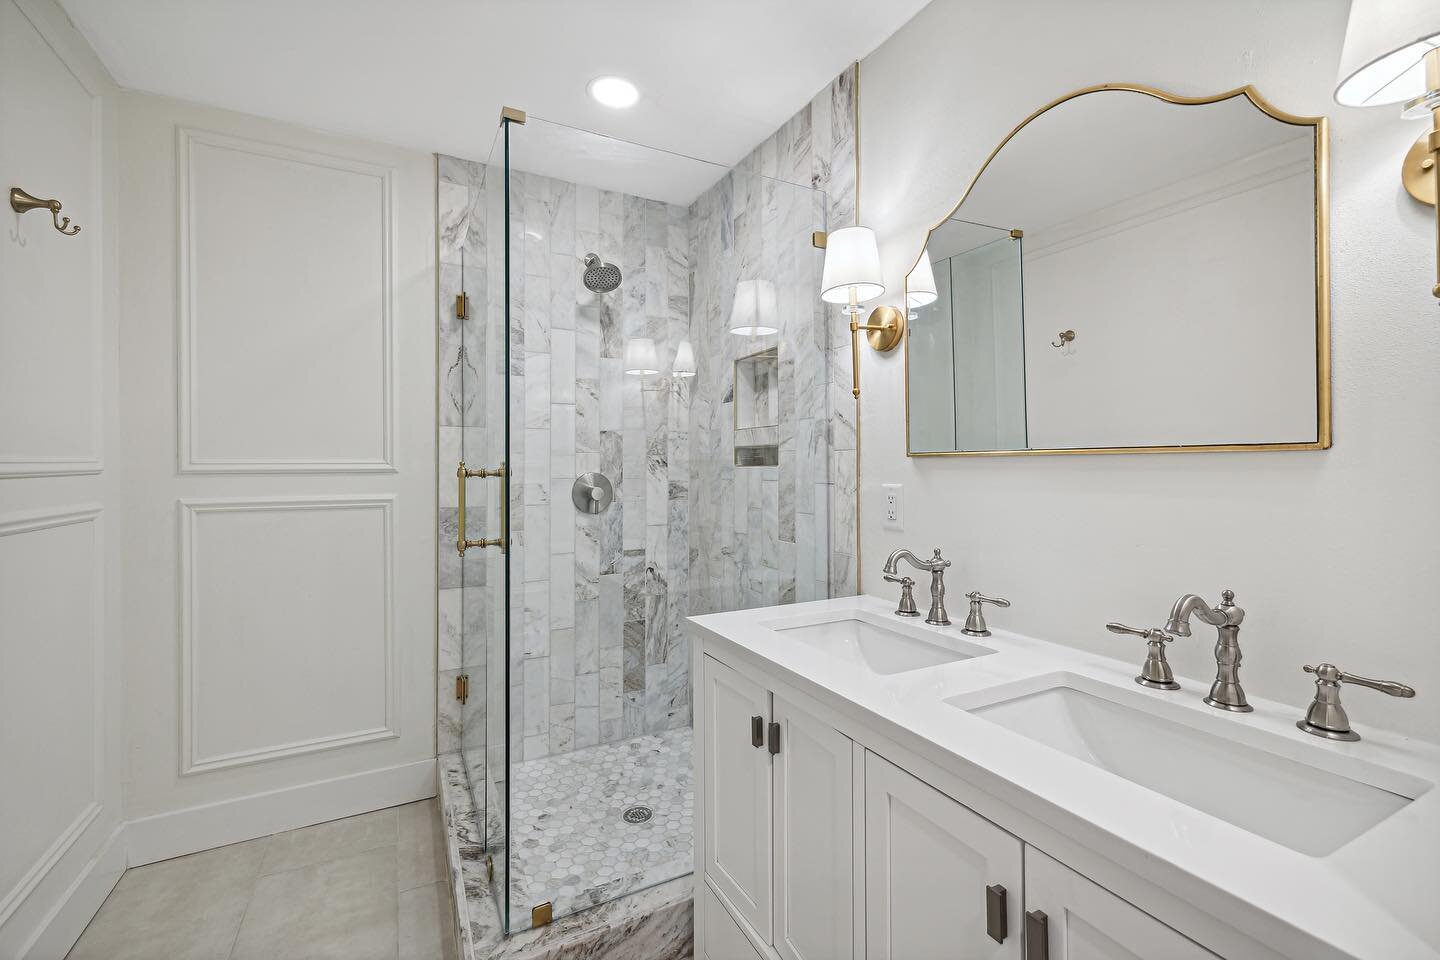 We love this timeless bathroom design ✨

Interior design: @teelcabana 
General Contractor: @floridateelspecialtybuilders